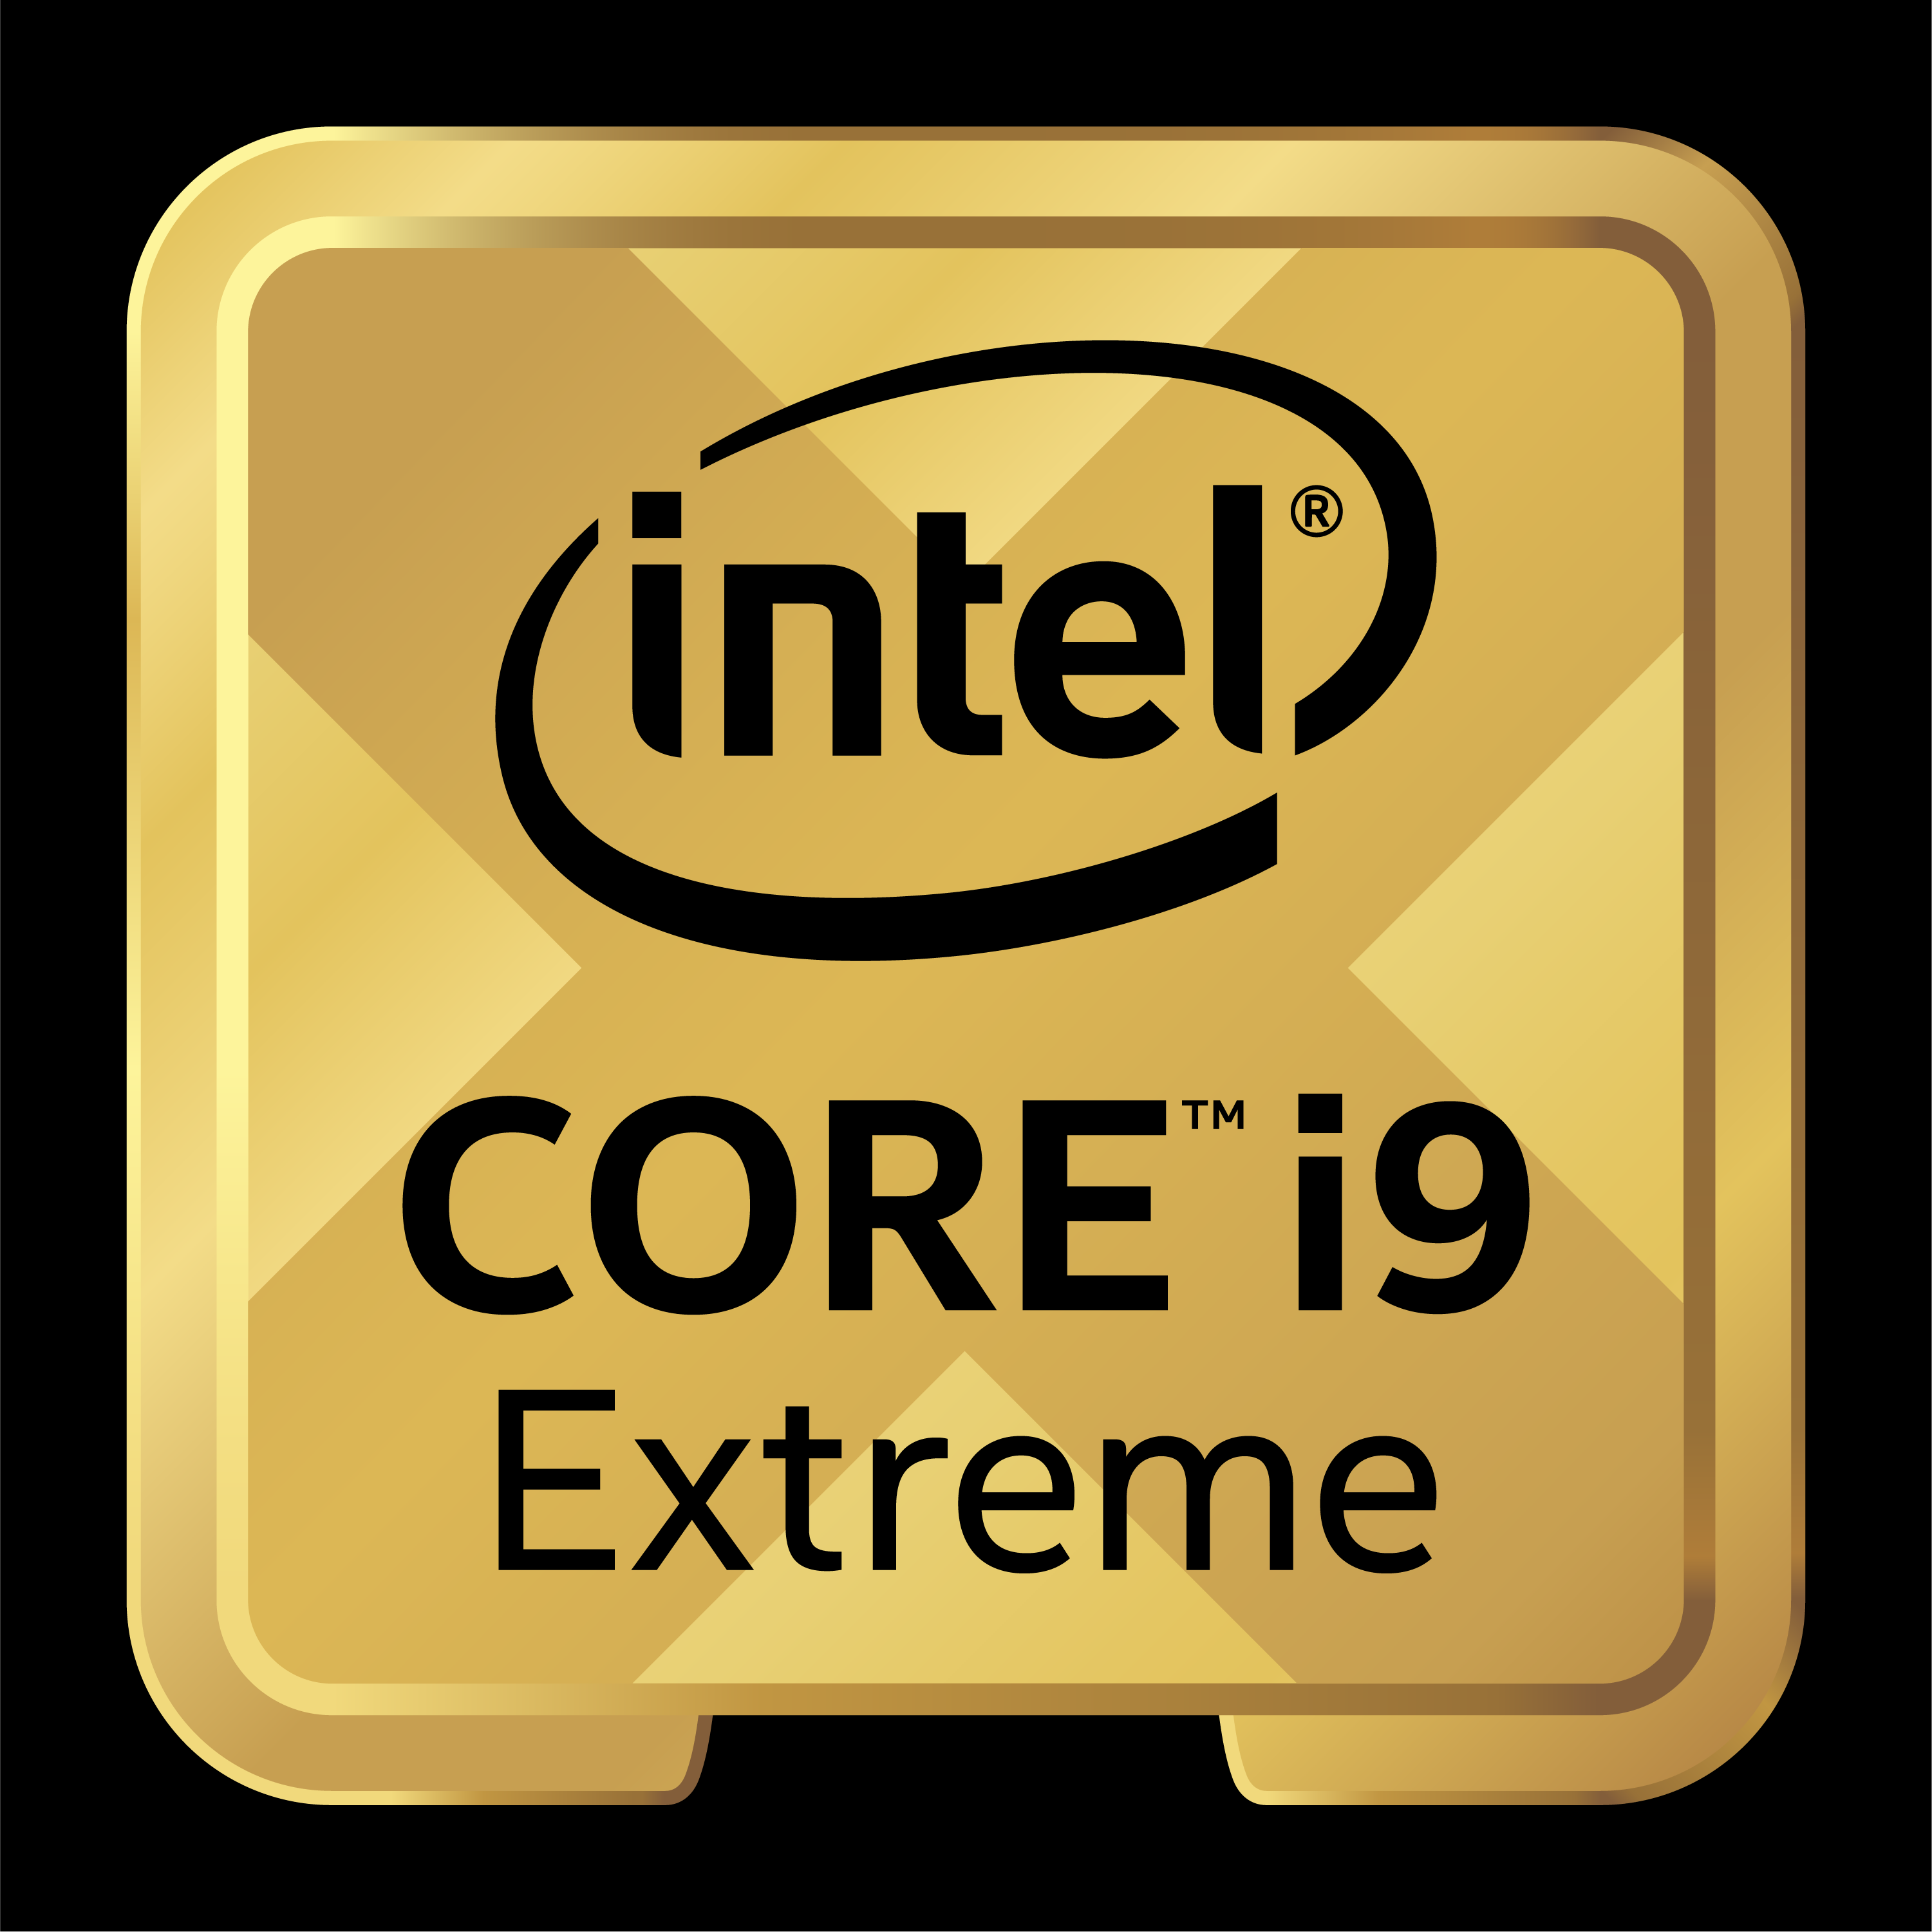 Процессор Intel Core i9-10980xe extreme Edition. Процессор Intel Core i9-10920x. Процессор Intel Core i9-10980xe Box. Процессор Intel Core i9-10920x Box. Модель процессора intel core